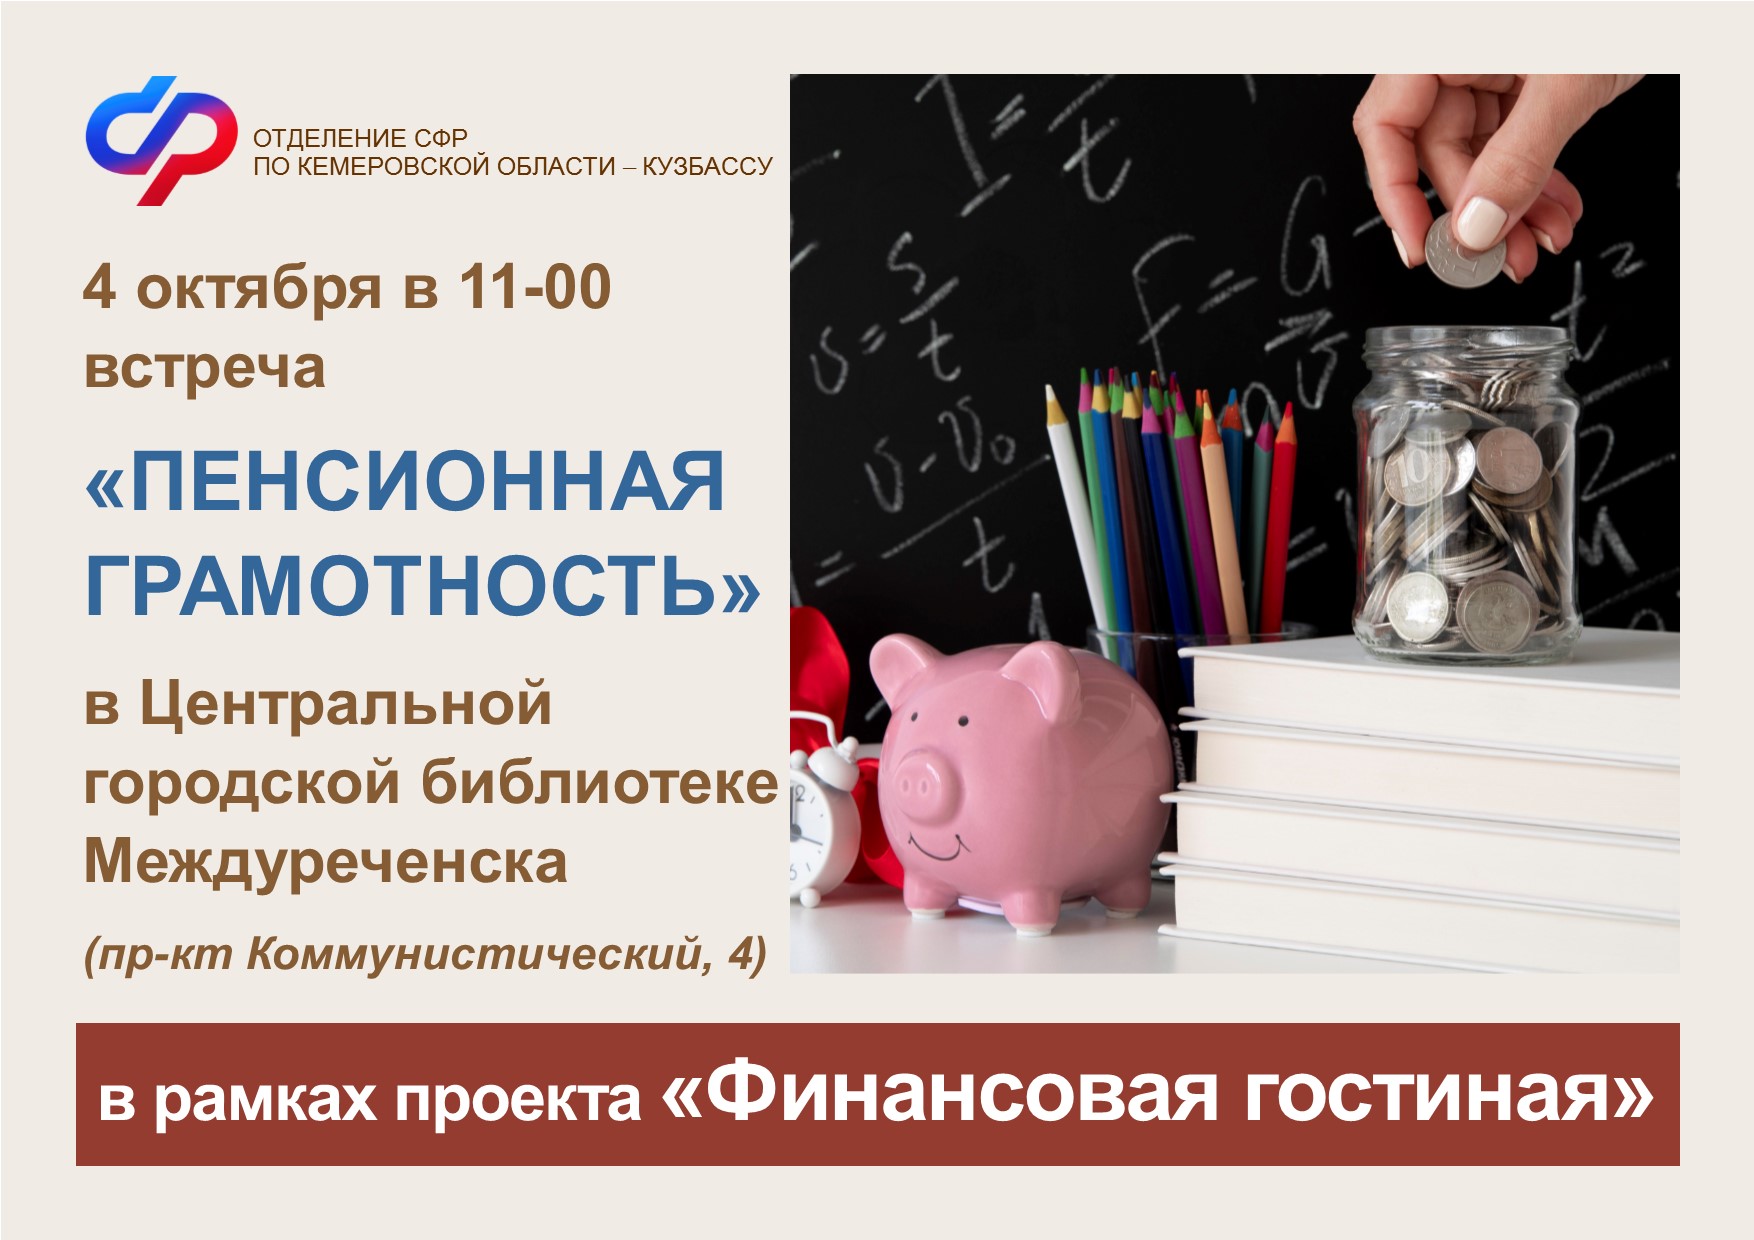 В Междуреченске в рамках проекта «Финансовая гостиная» пройдет встреча «Пенсионная грамотность»